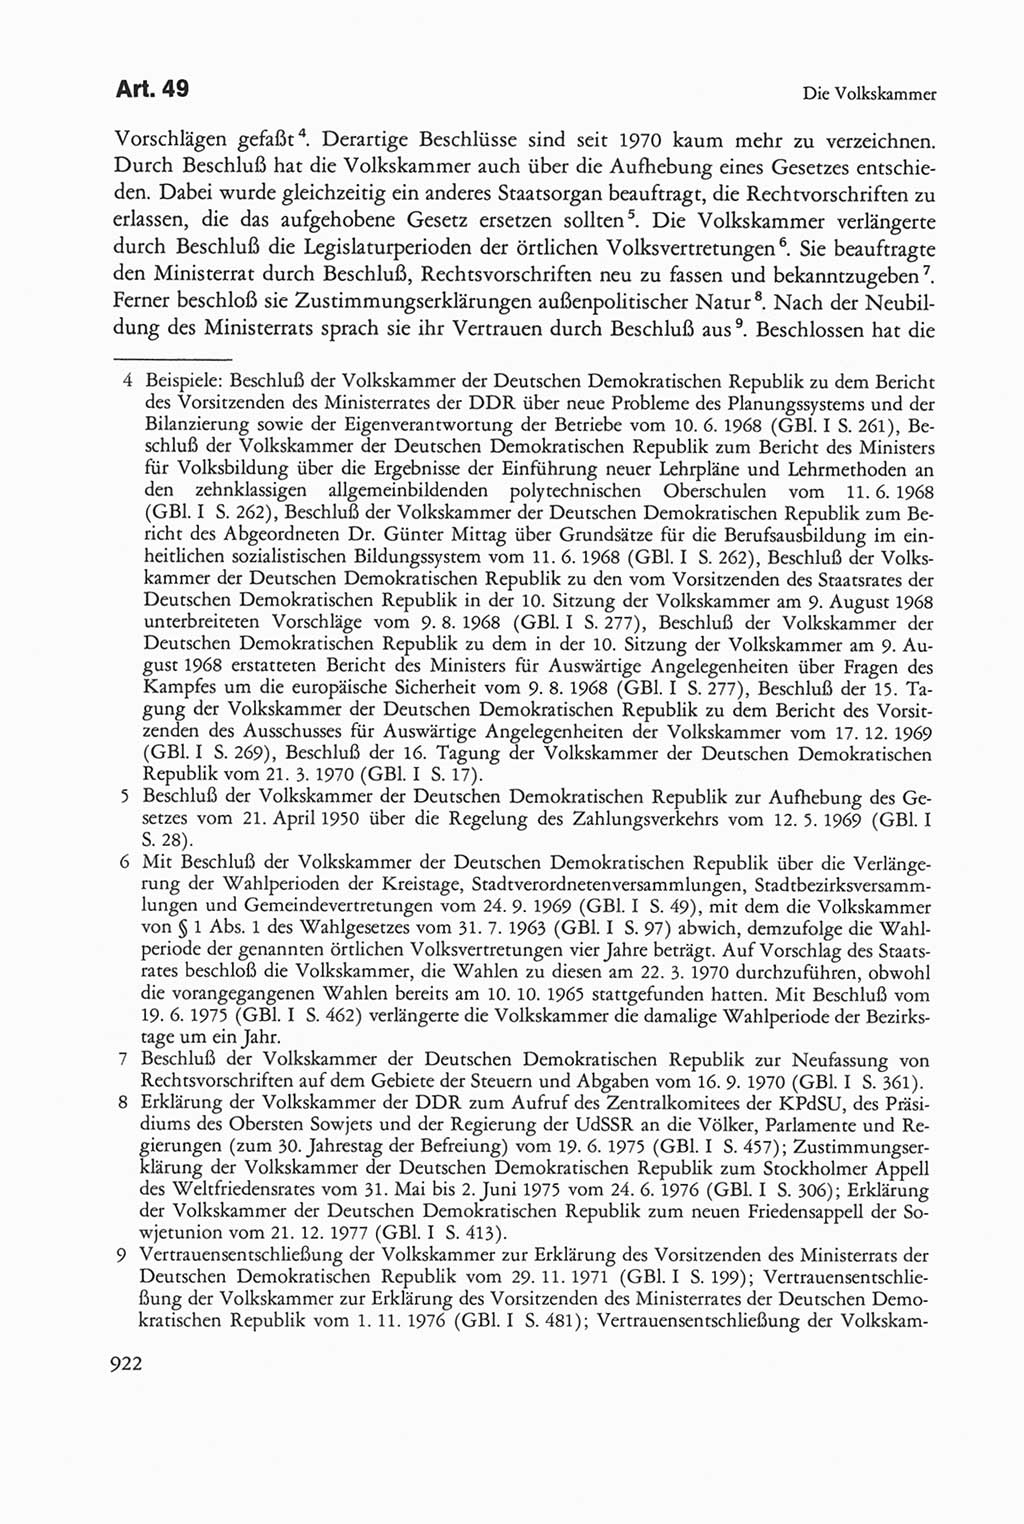 Die sozialistische Verfassung der Deutschen Demokratischen Republik (DDR), Kommentar 1982, Seite 922 (Soz. Verf. DDR Komm. 1982, S. 922)